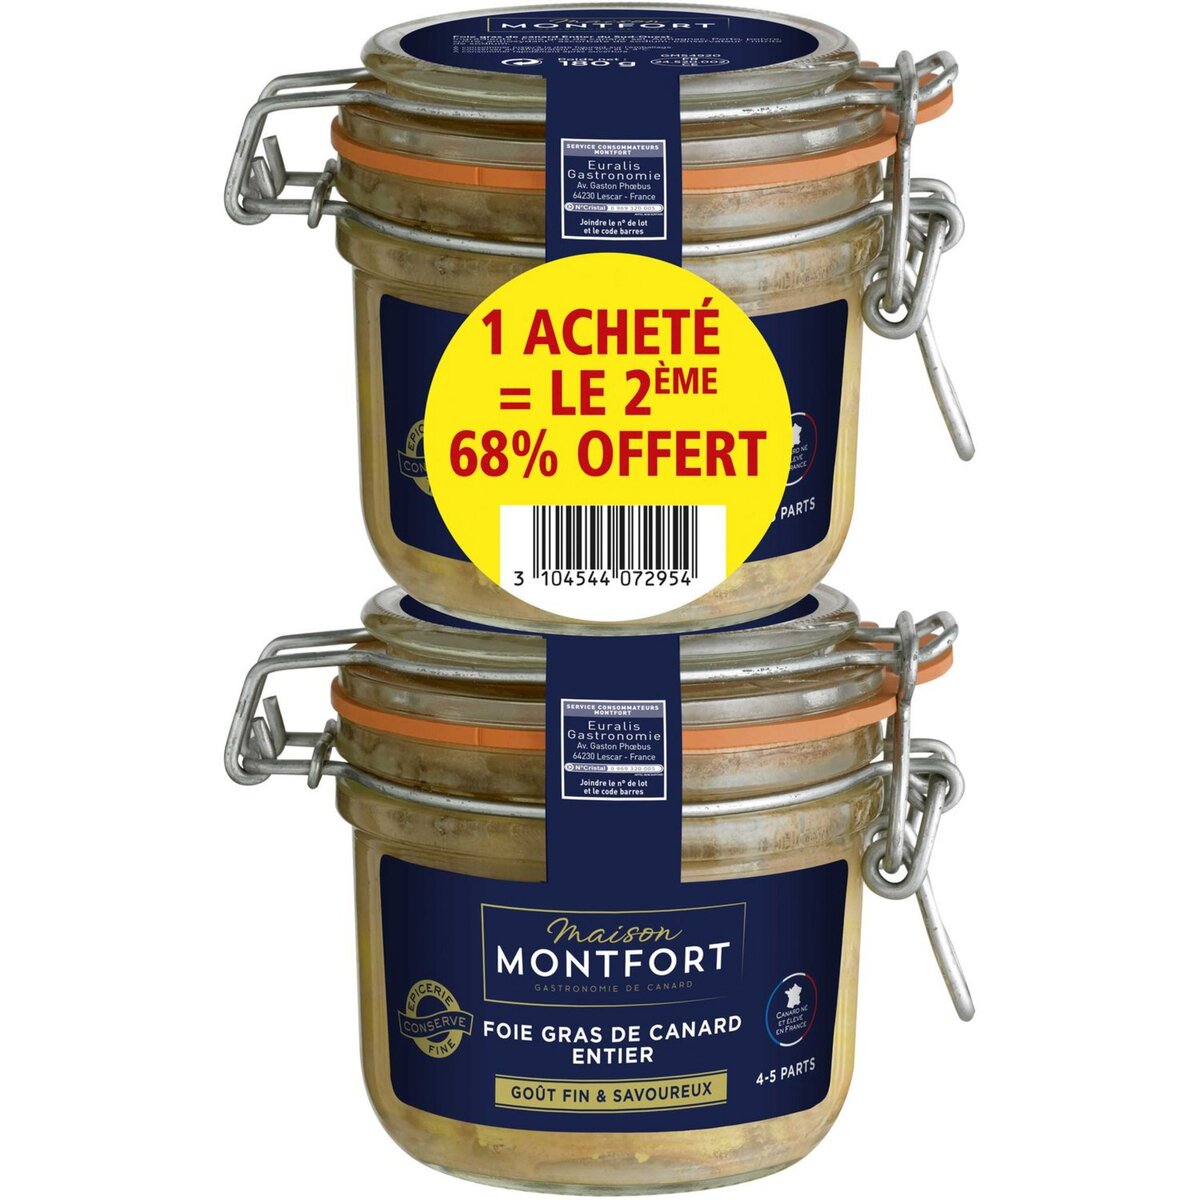 MONTFORT Foie gras de canard entier 2ème 68% offert 8-10 parts 2x180g